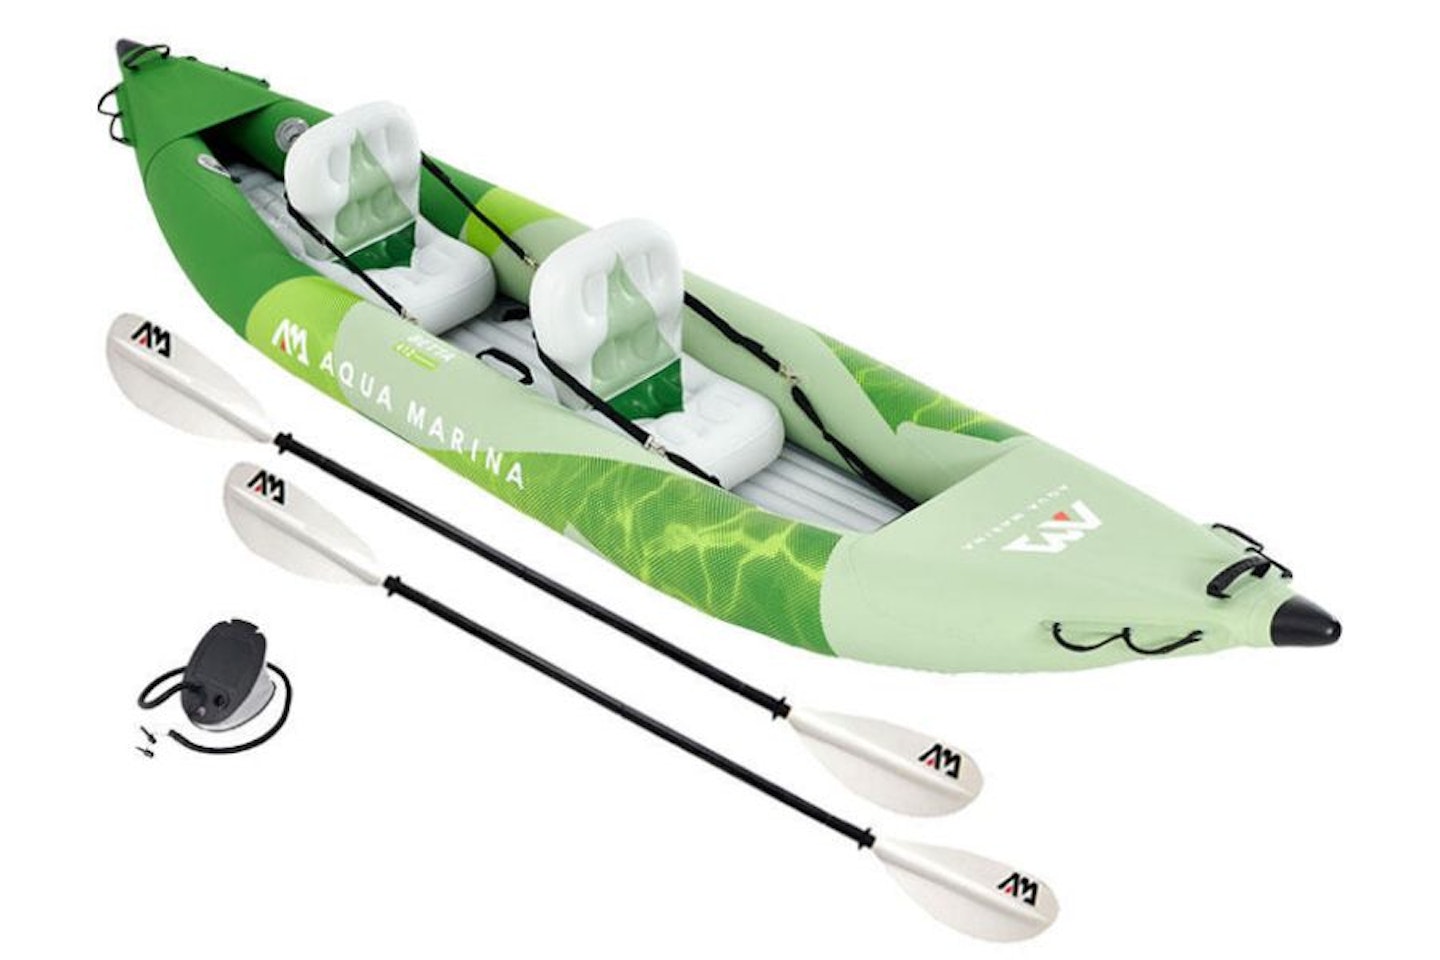 Aqua Marina Betta Inflatable Kayak